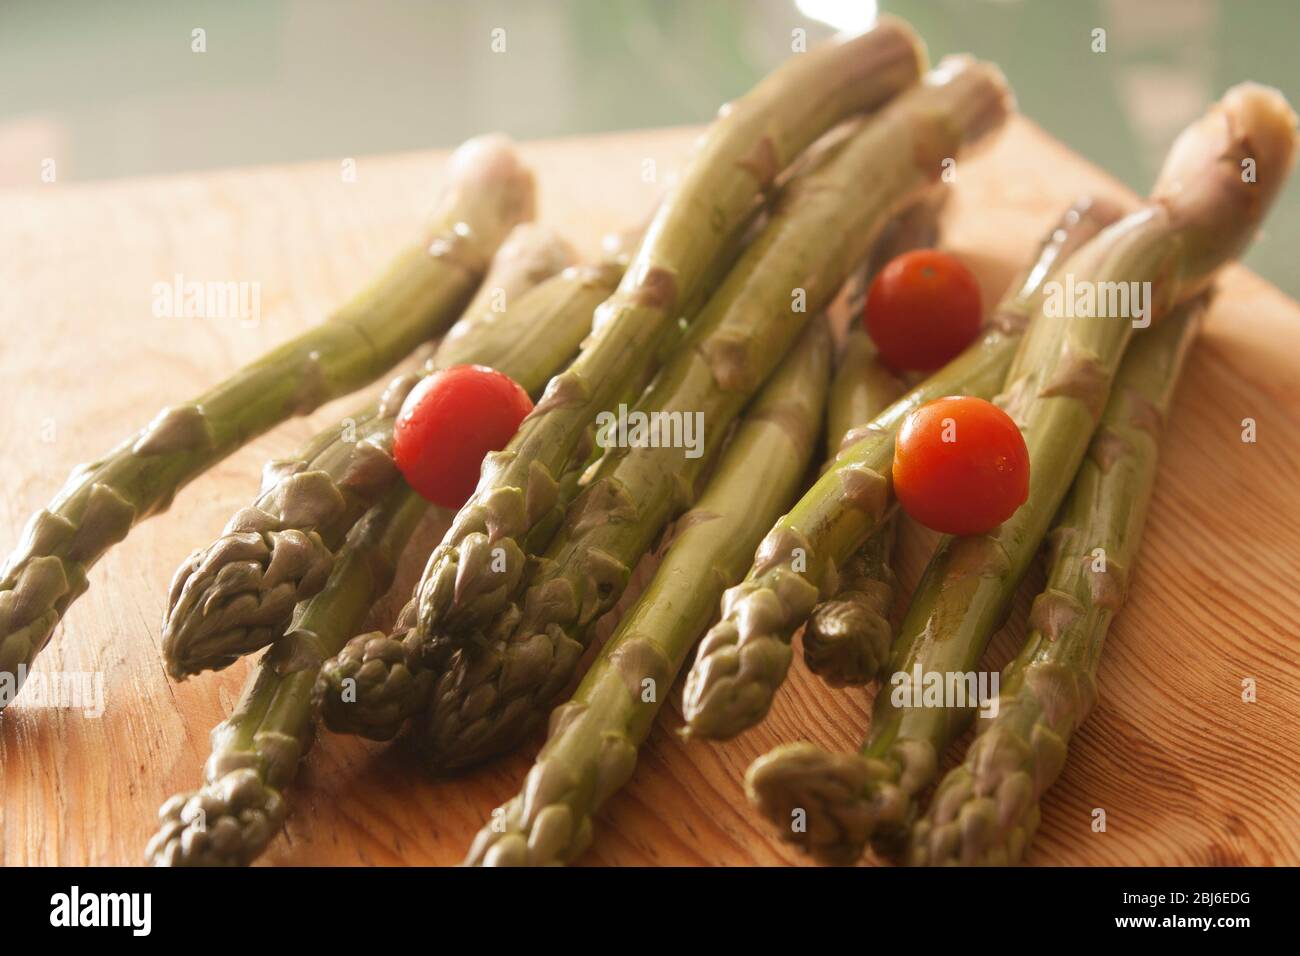 Largos tallos de espárragos verdes con tomates cherry alrededor listos para comerse en creudo Stock Photo